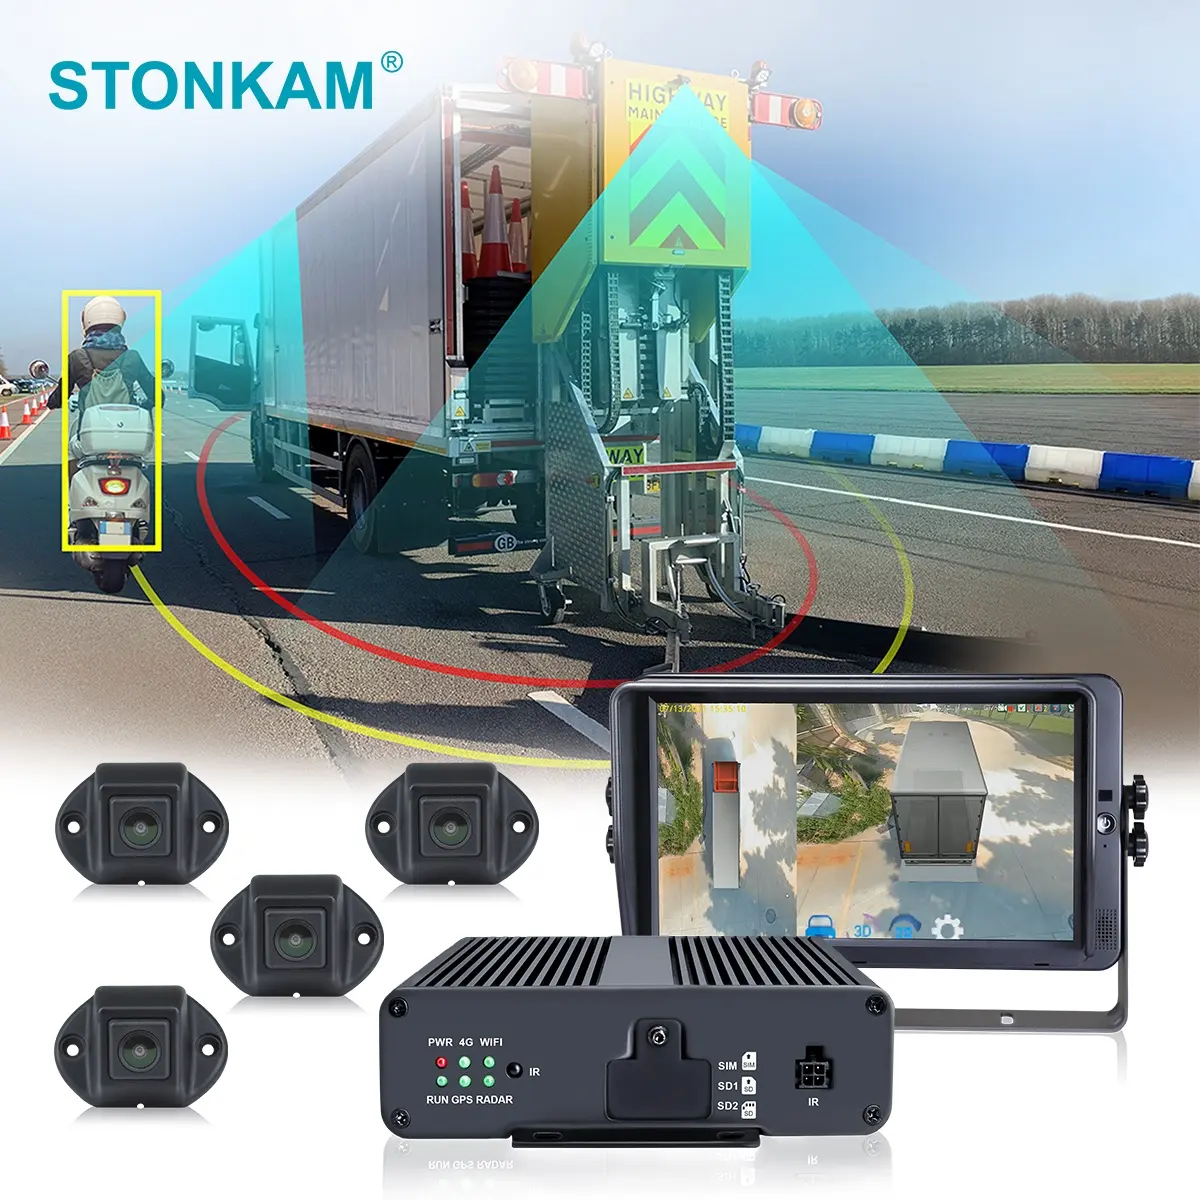 STONKAM 3D HD 360 תואר משאית מבט היקפי רכב מצלמה ניטור מערכת Heavy Duty משאית עם חניה חיישן עבור בית הספר אוטובוס